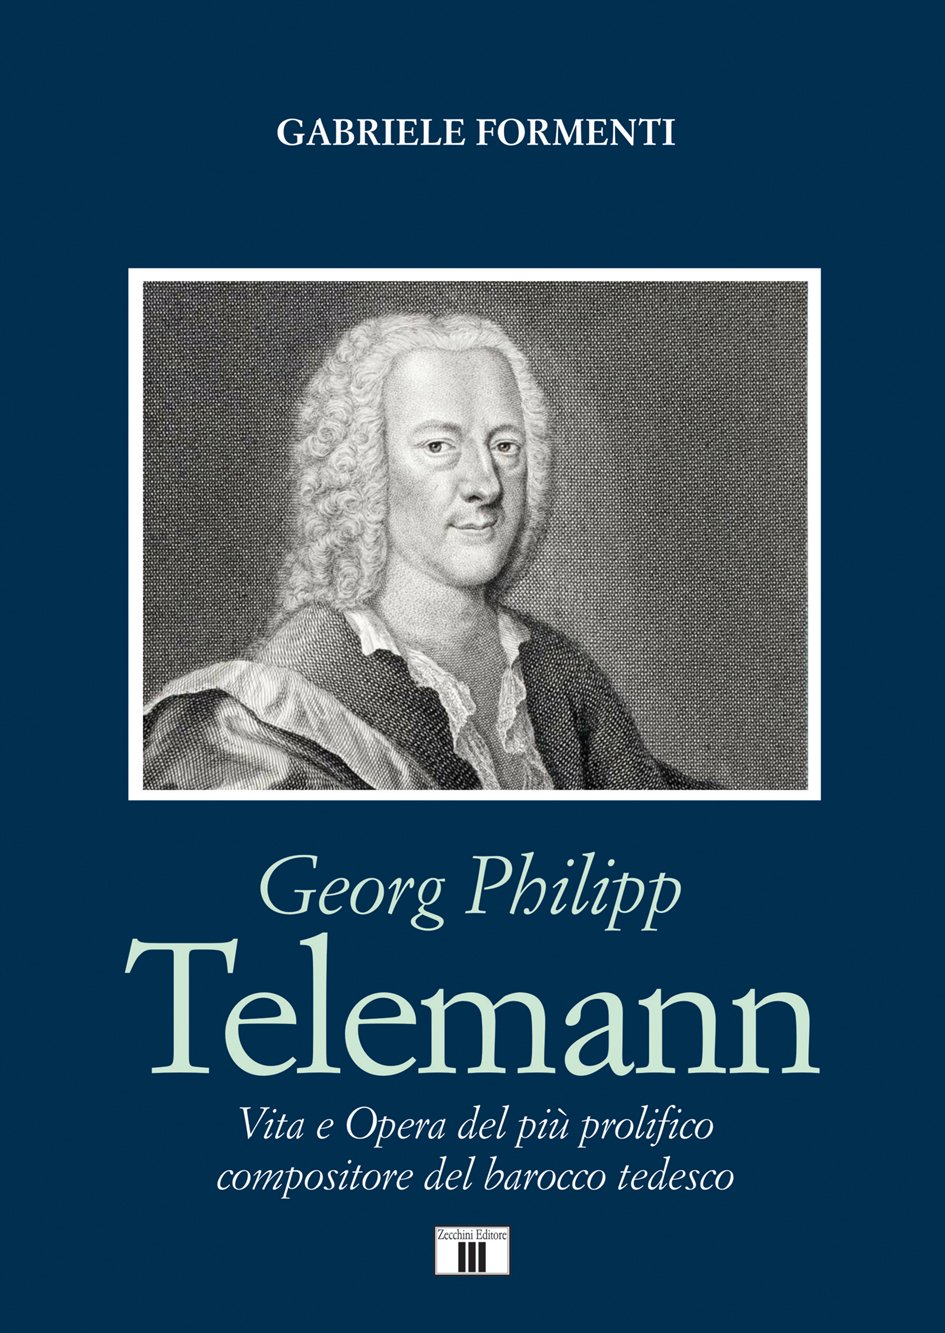 Georg Philipp Telemann, Vita e Opera del più prolifico compositore del barocco tedesco